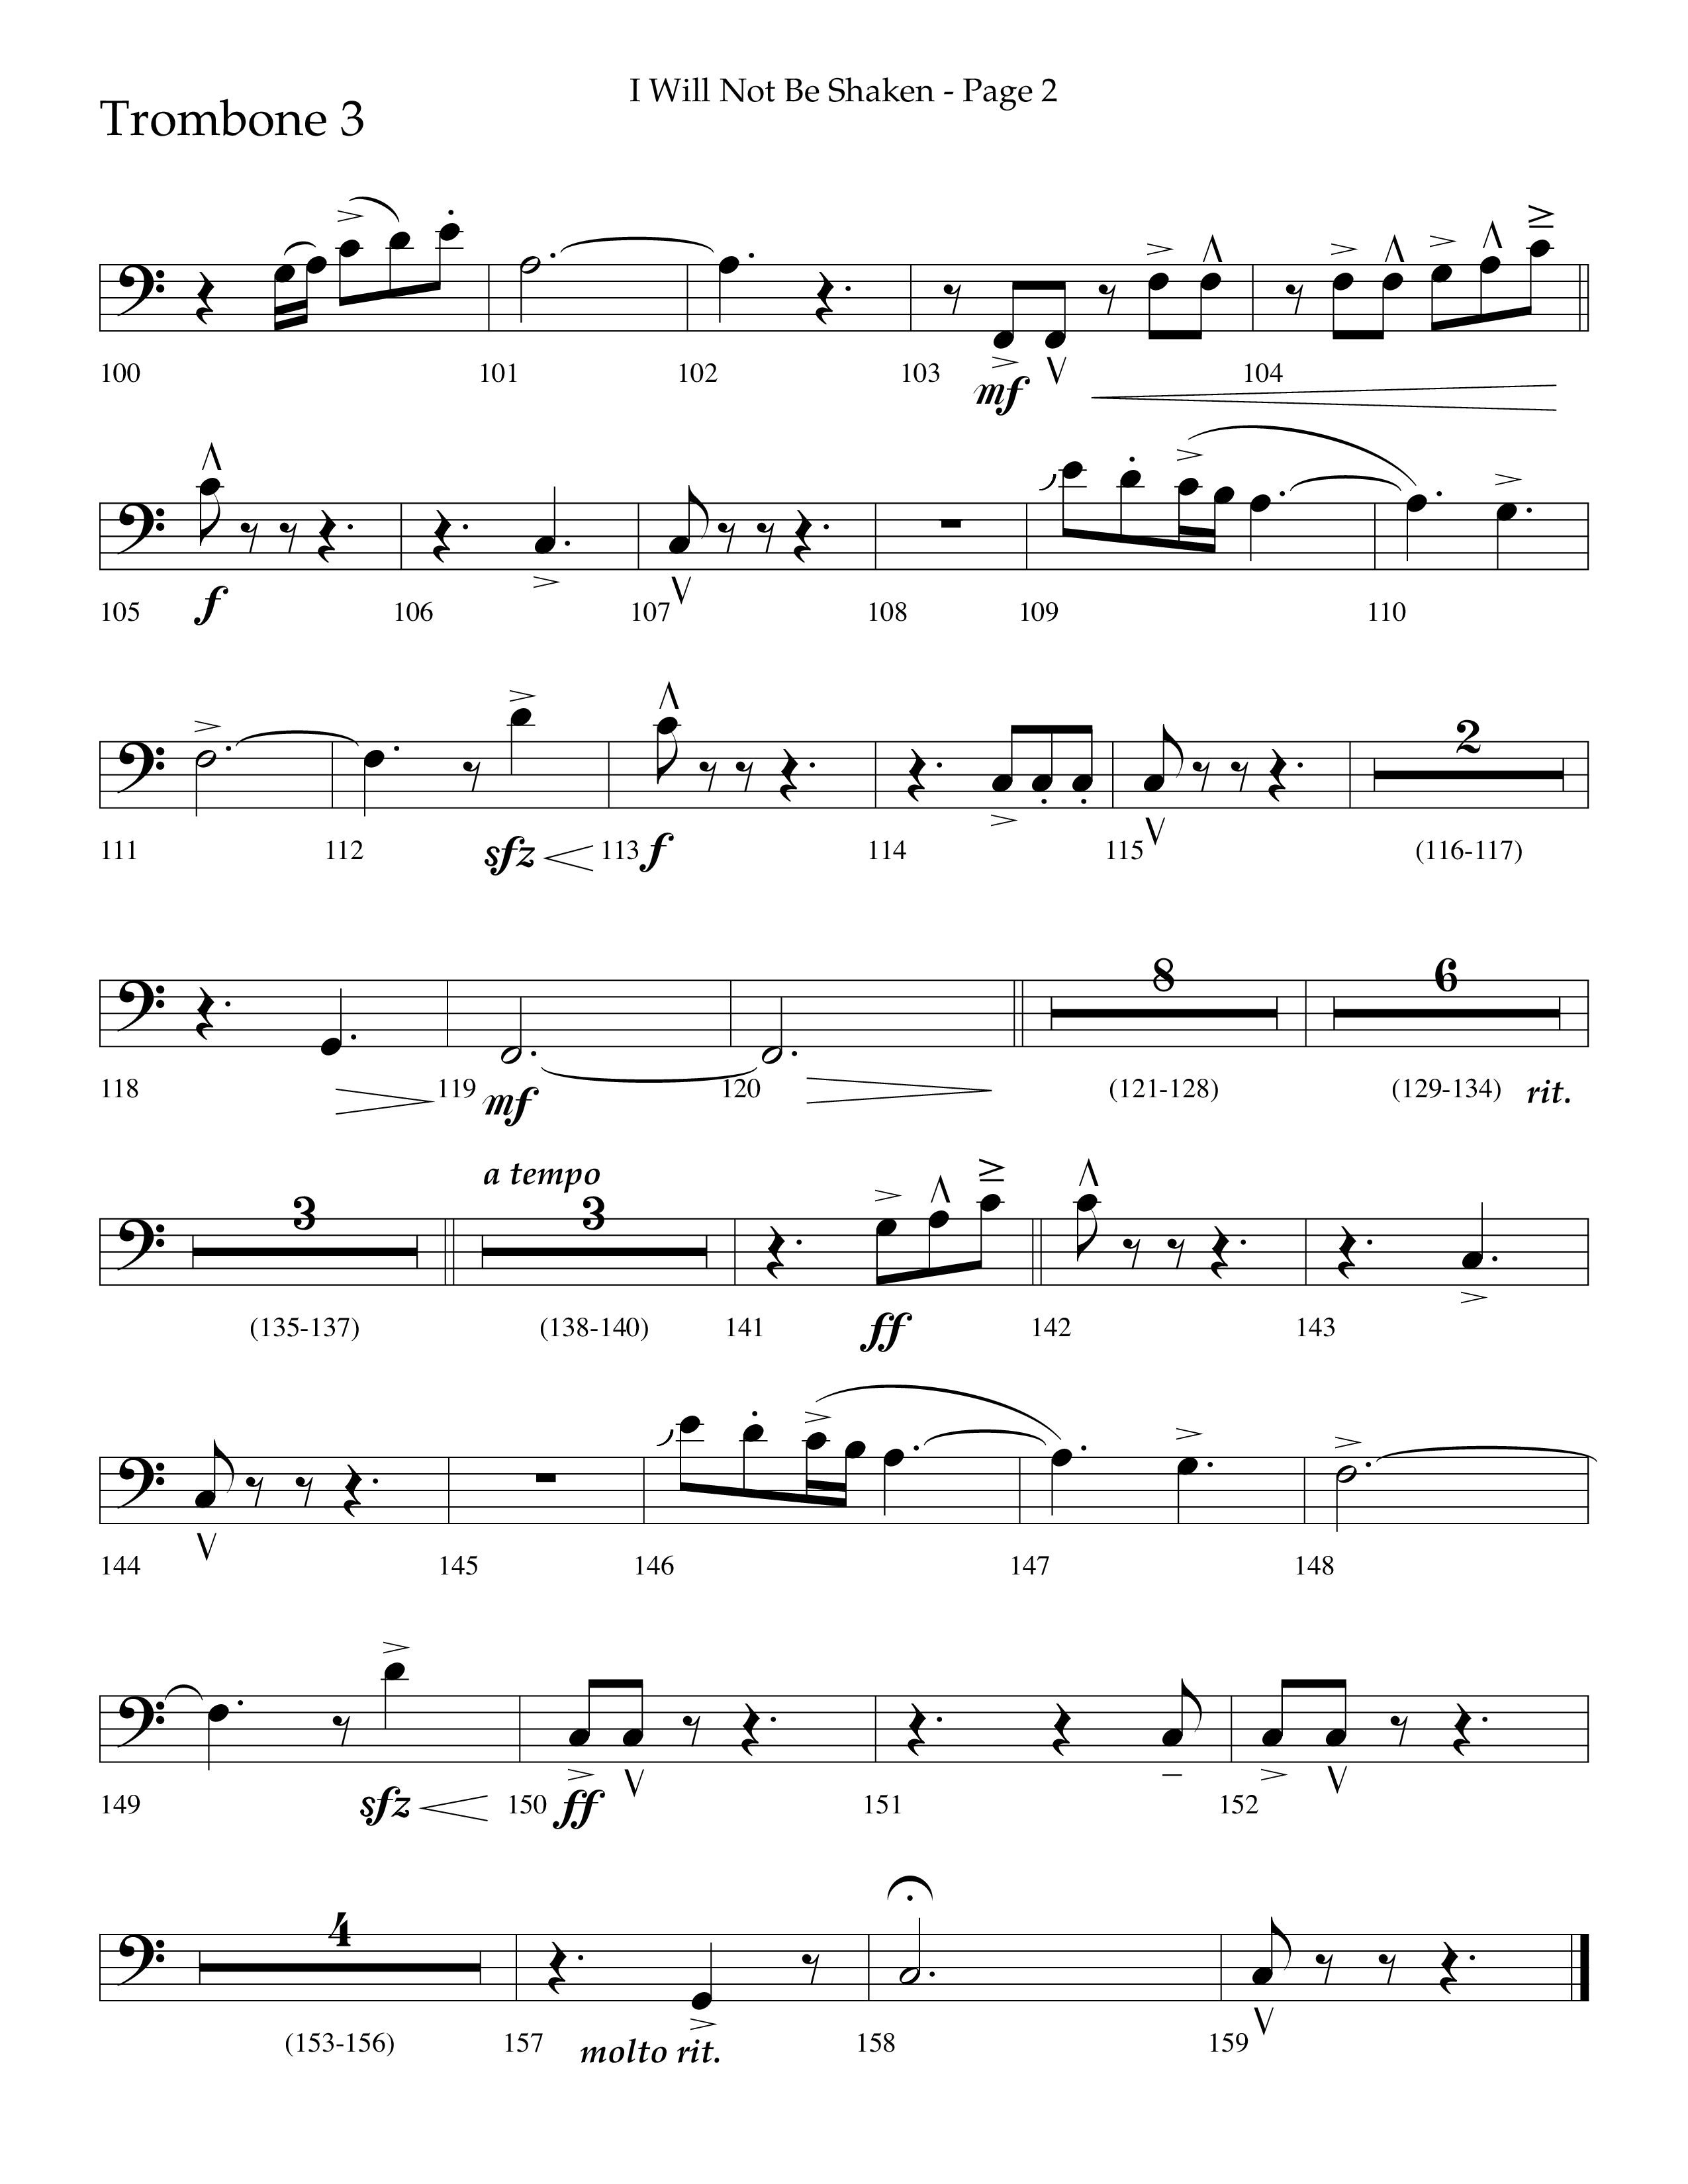 I Will Not Be Shaken (Choral Anthem SATB) Trombone 3 (Lifeway Choral / Arr. Cliff Duren)